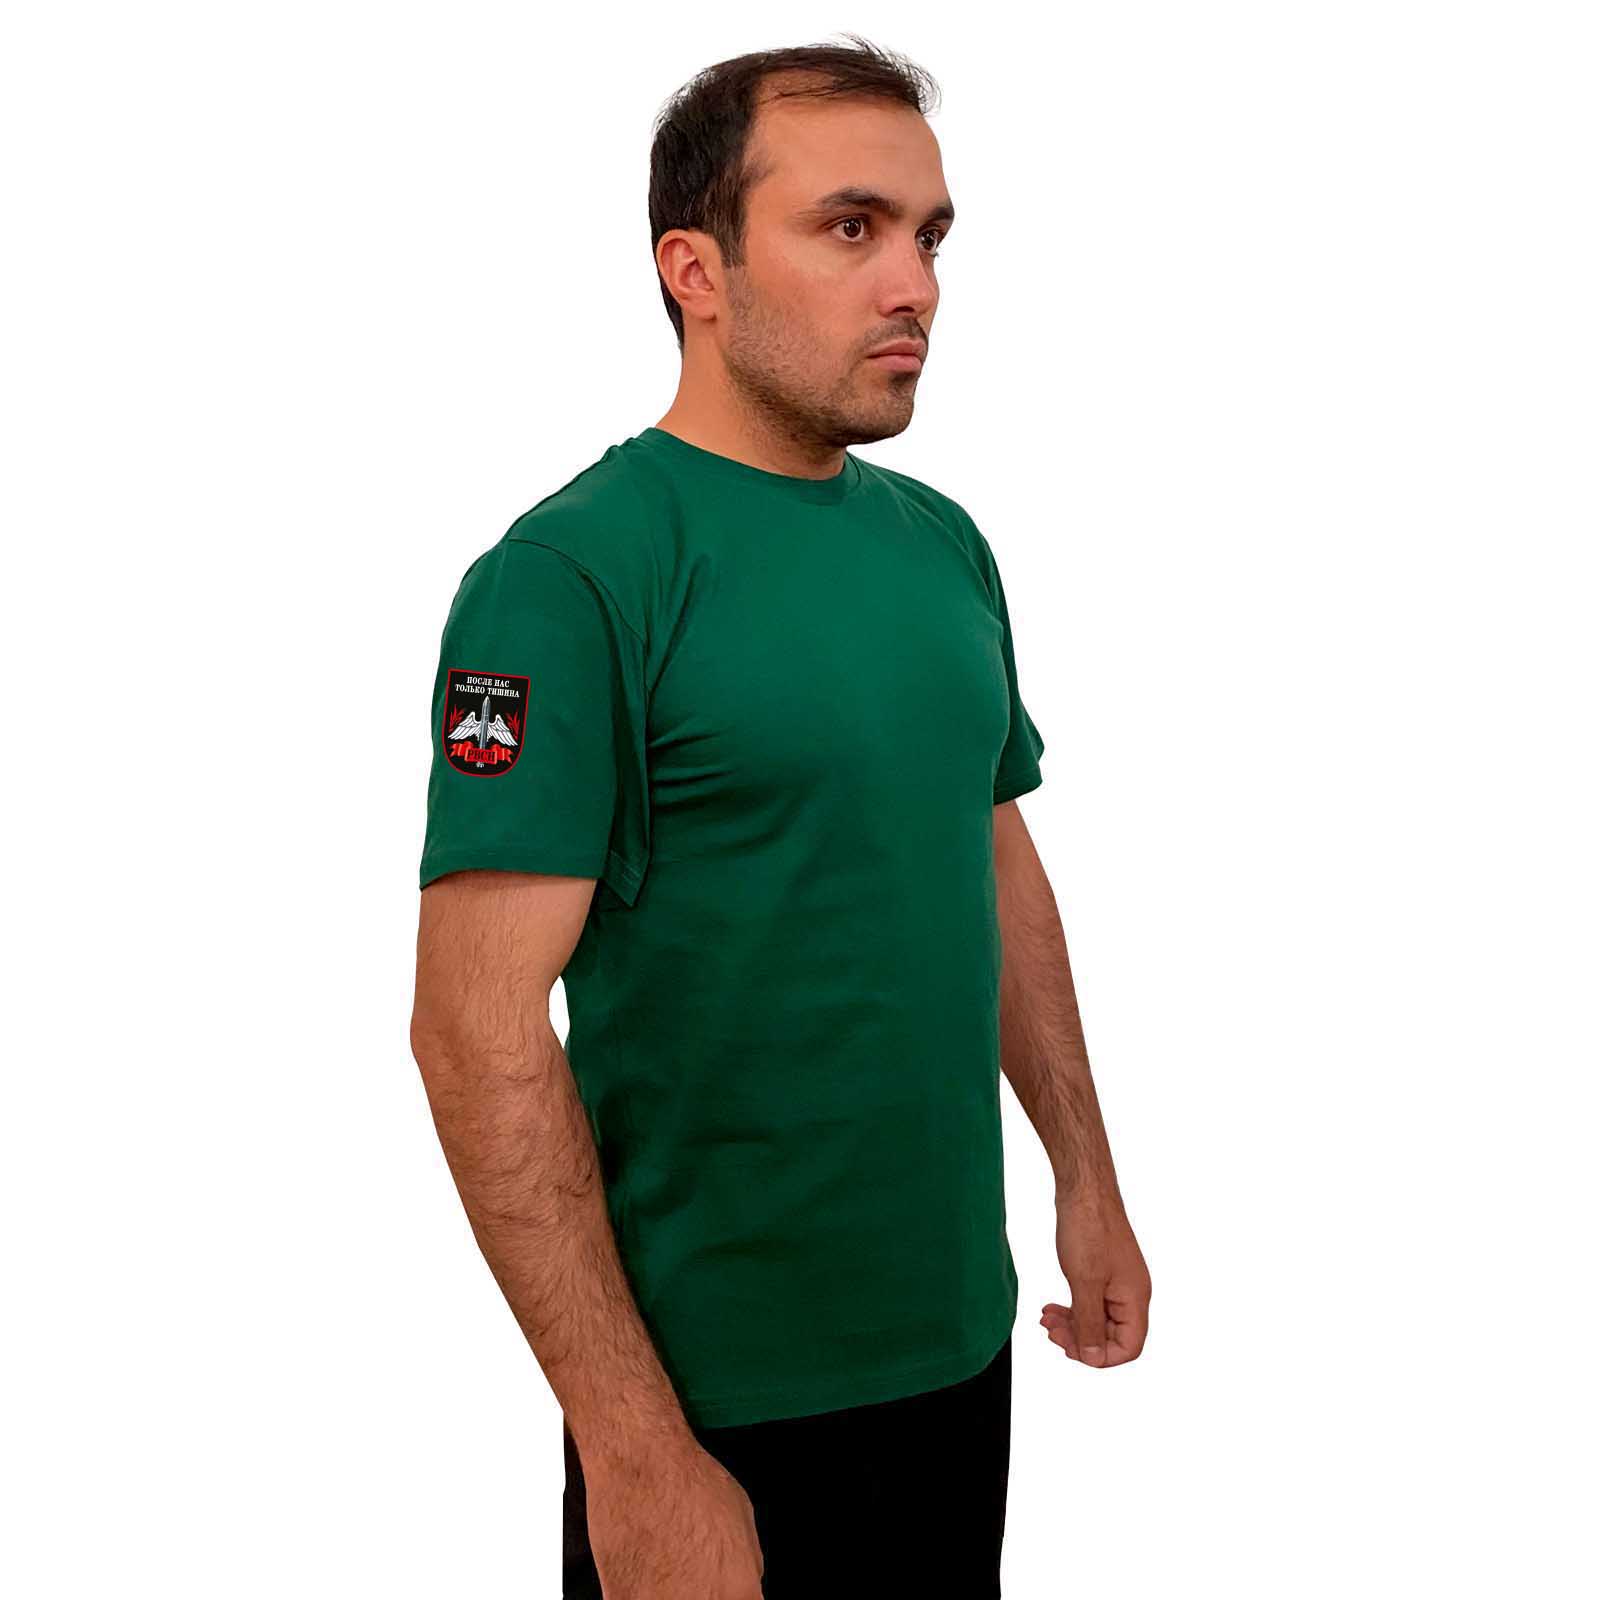 Зелёная футболка с термотрансфером РВСН на рукаве